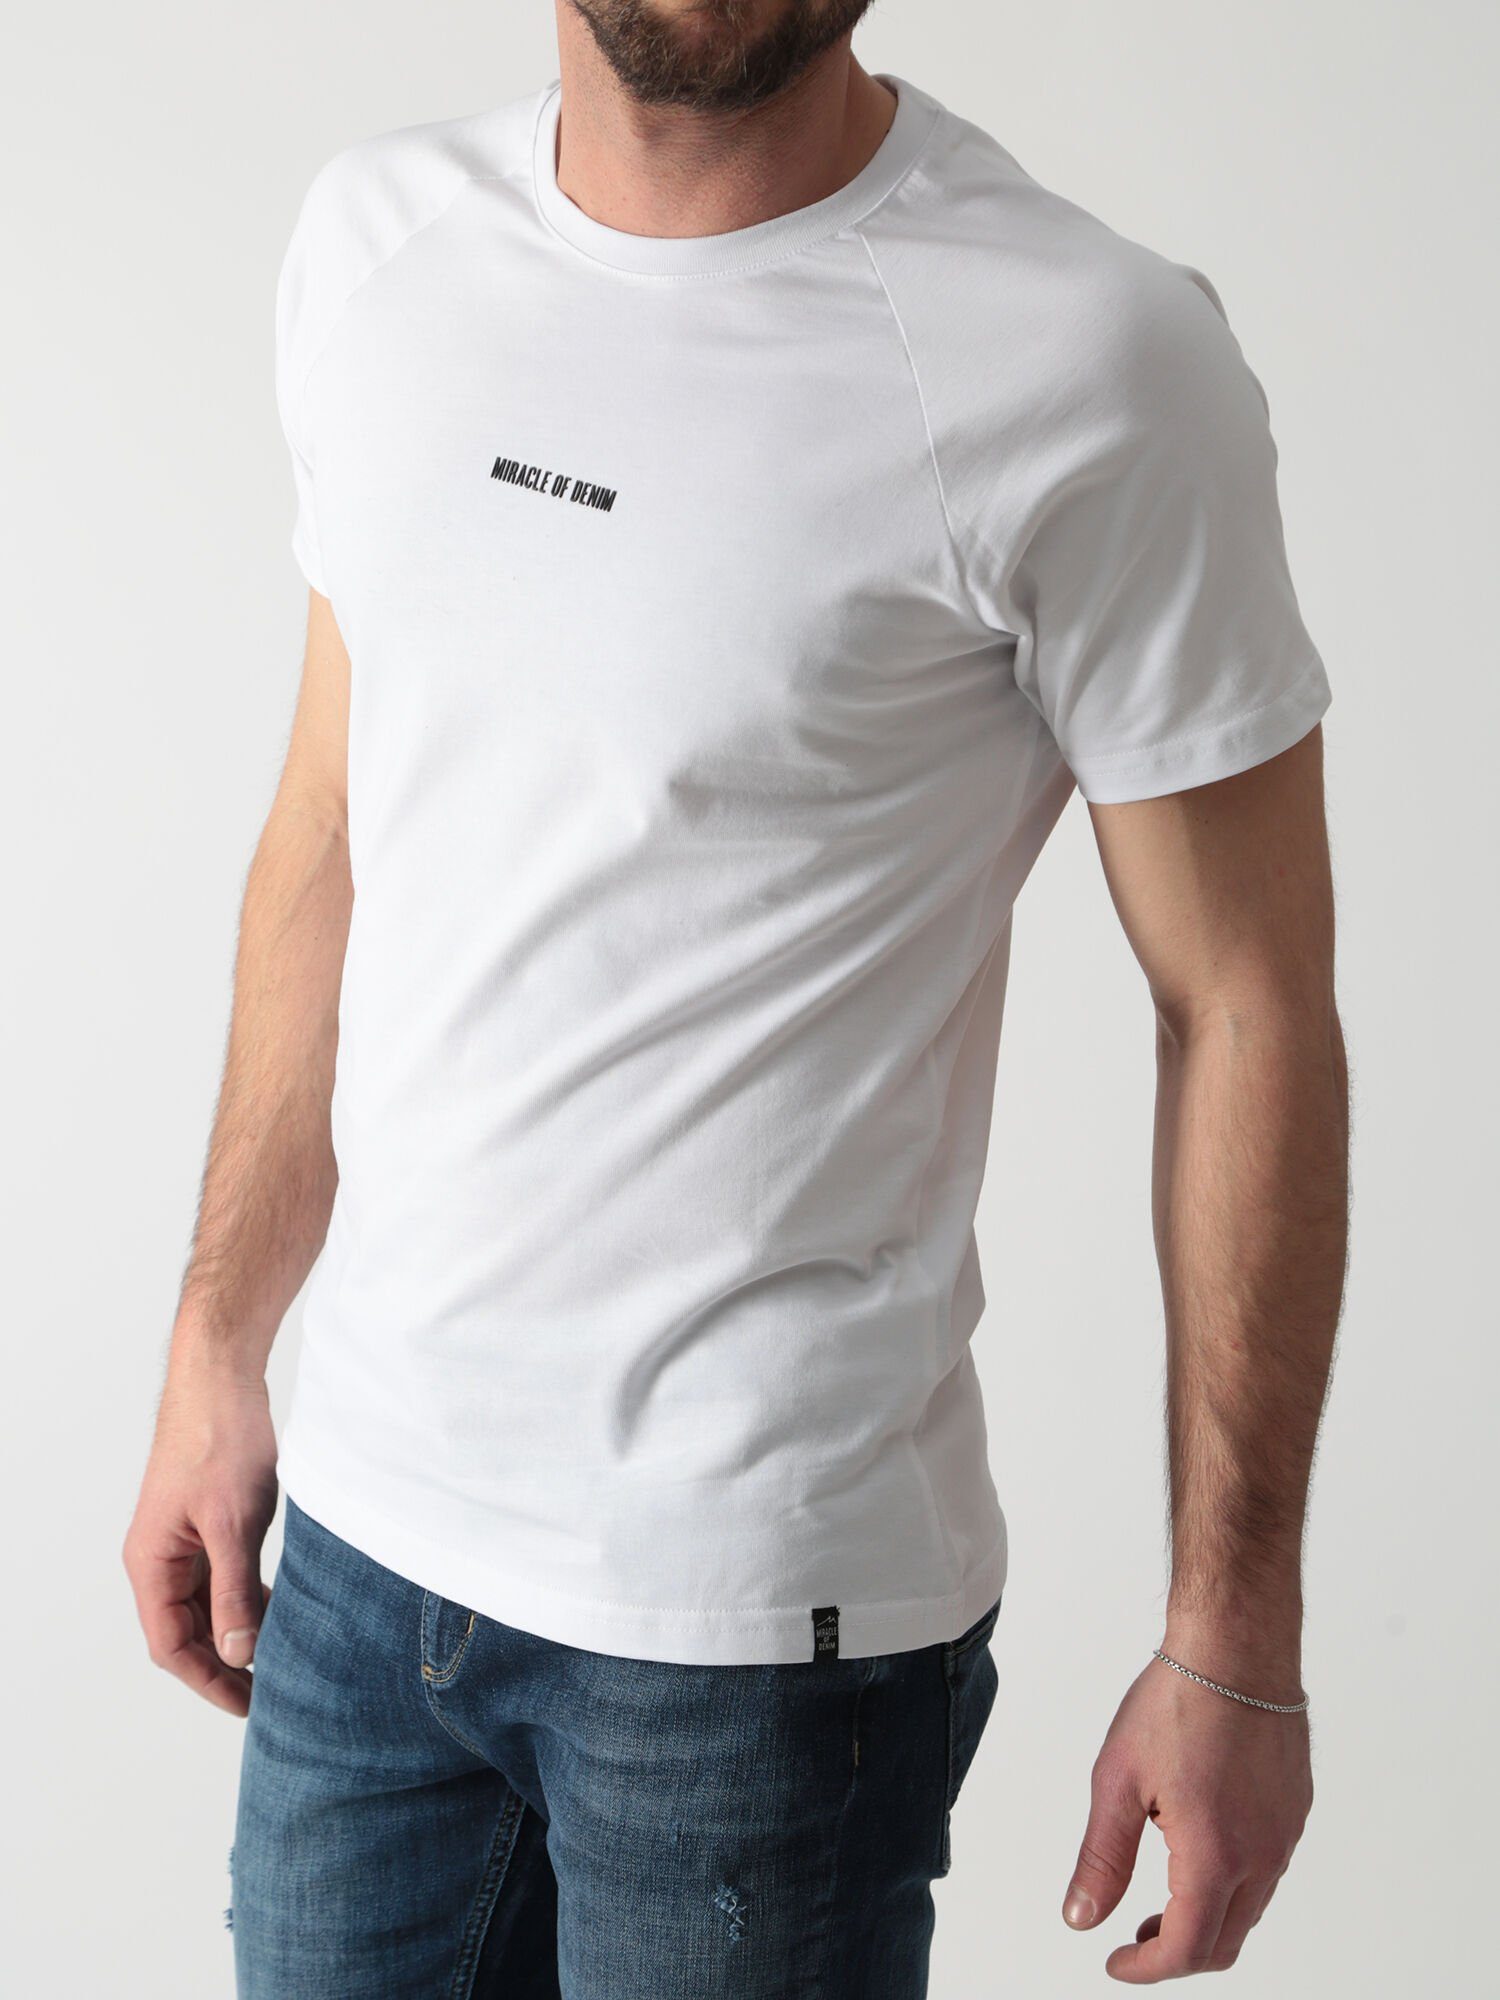 Denim T-Shirt Logo of Miracle White mit